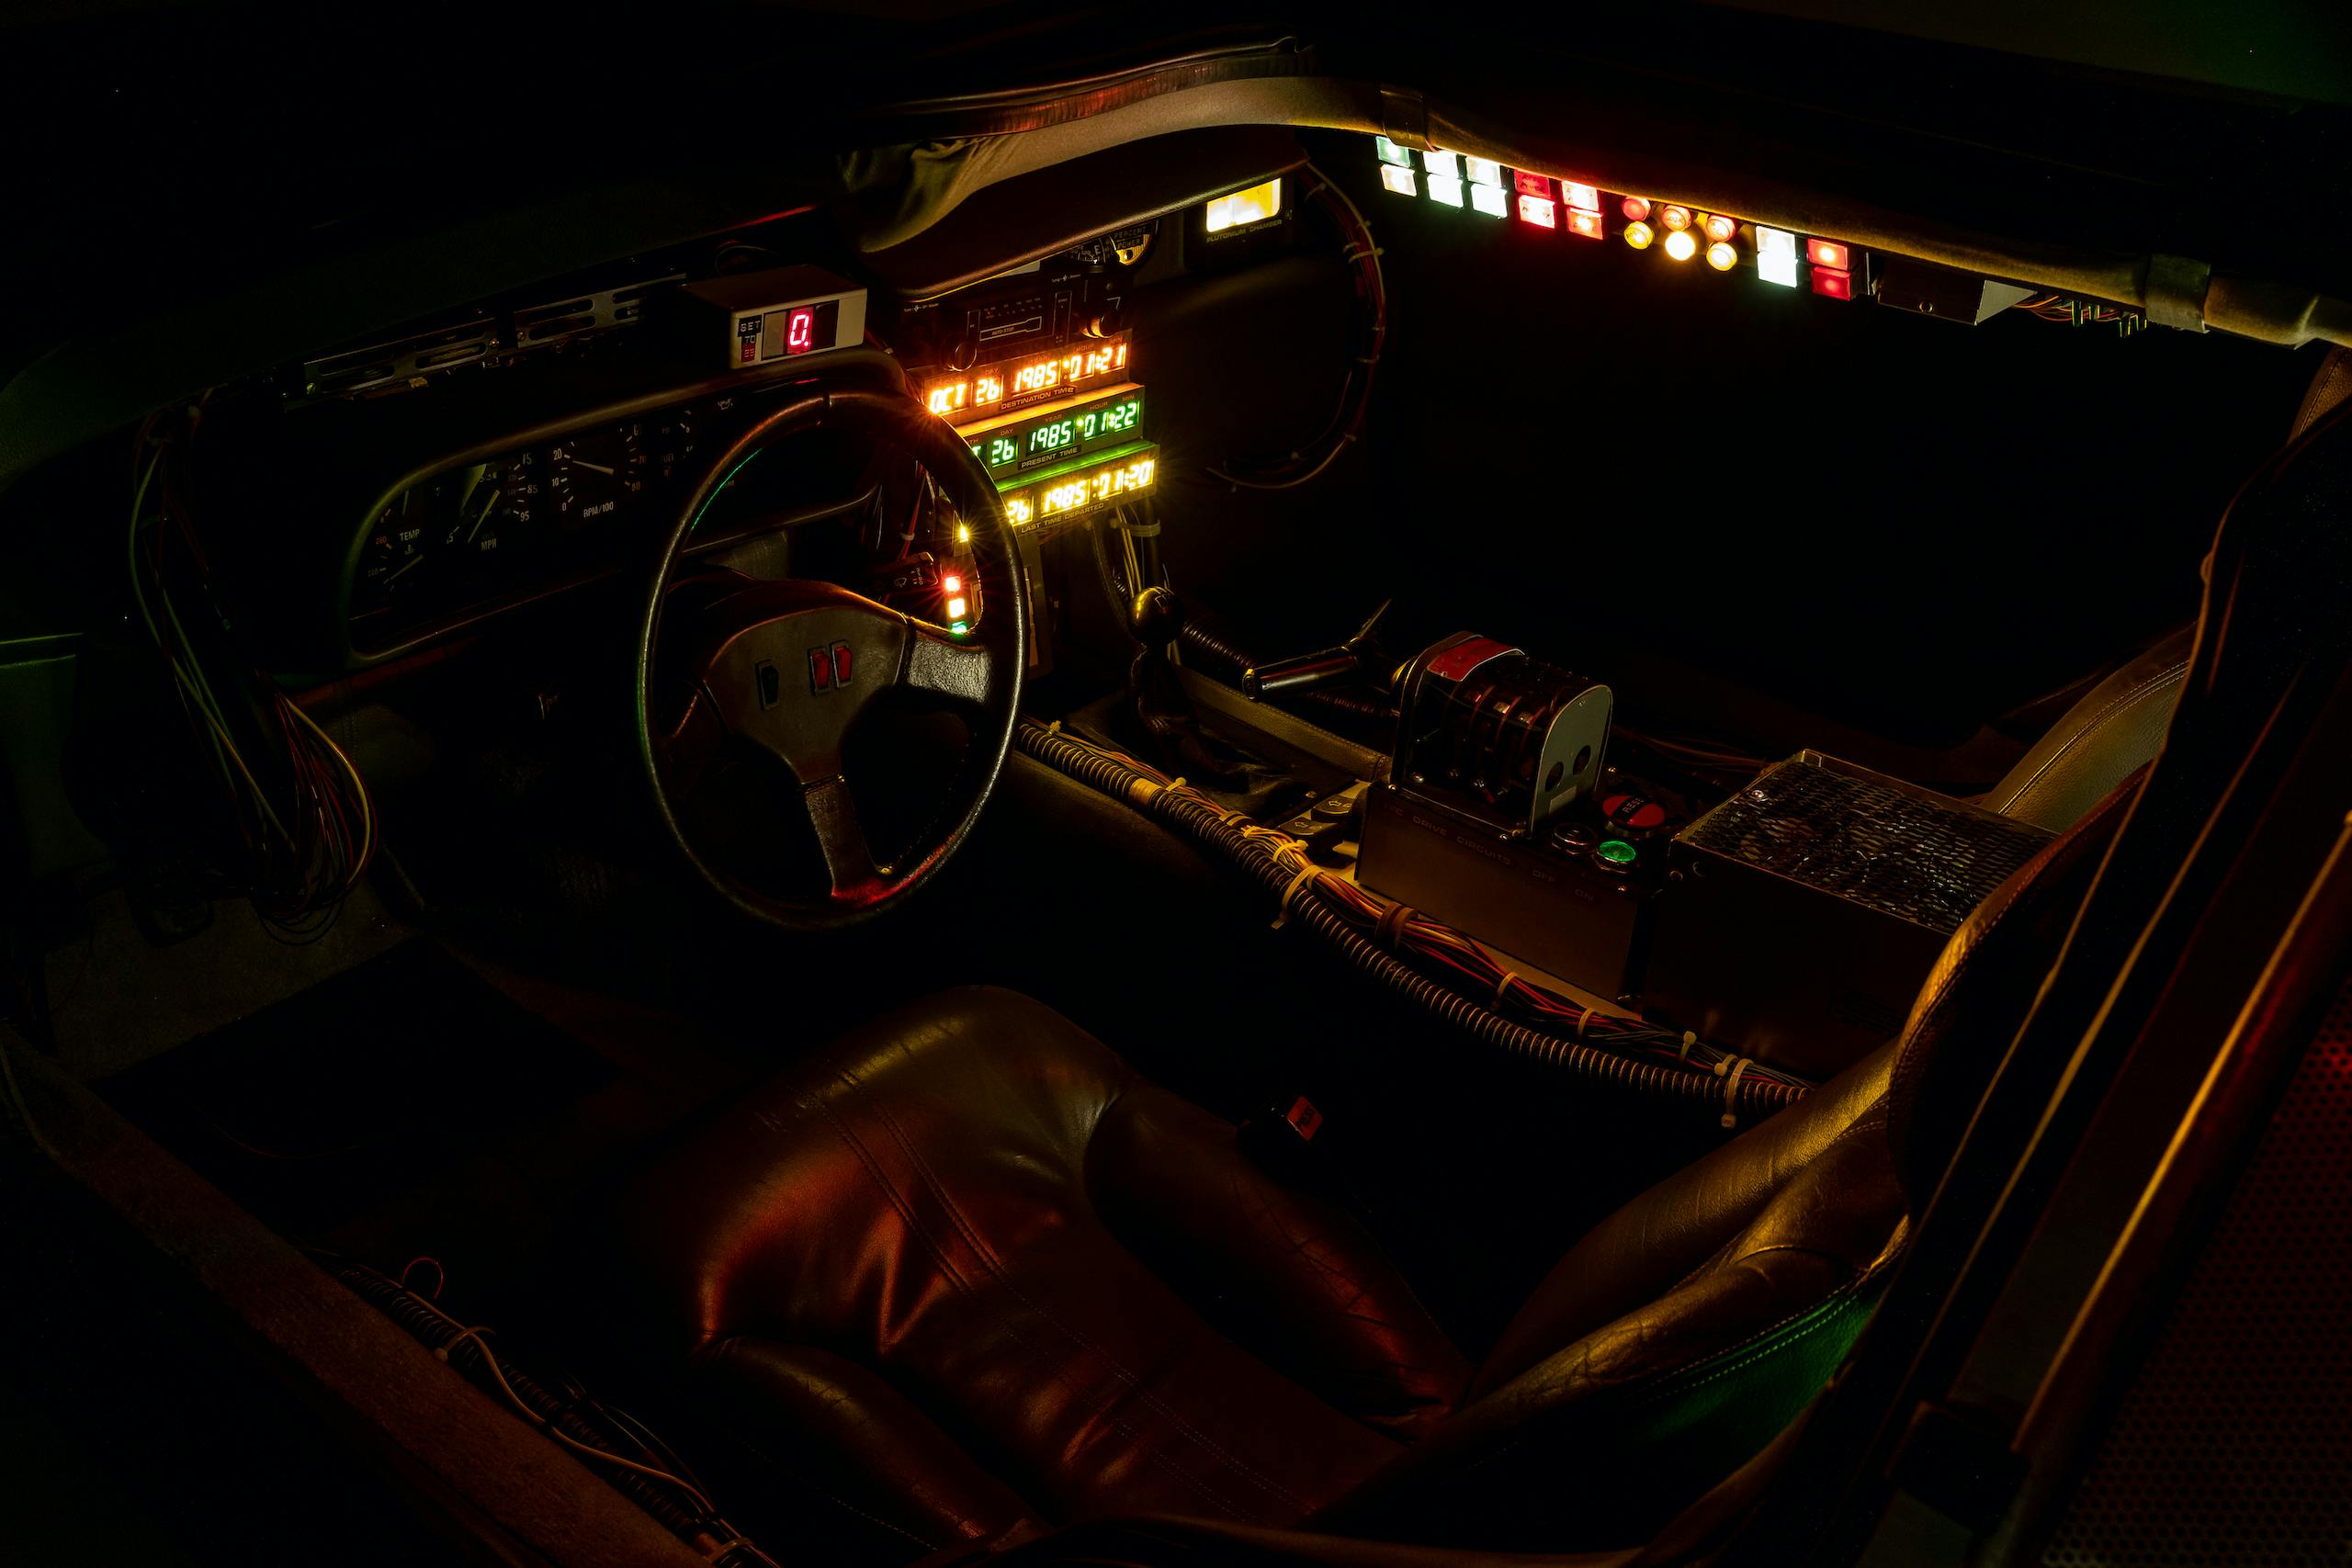 Back to Future DeLorean interior night